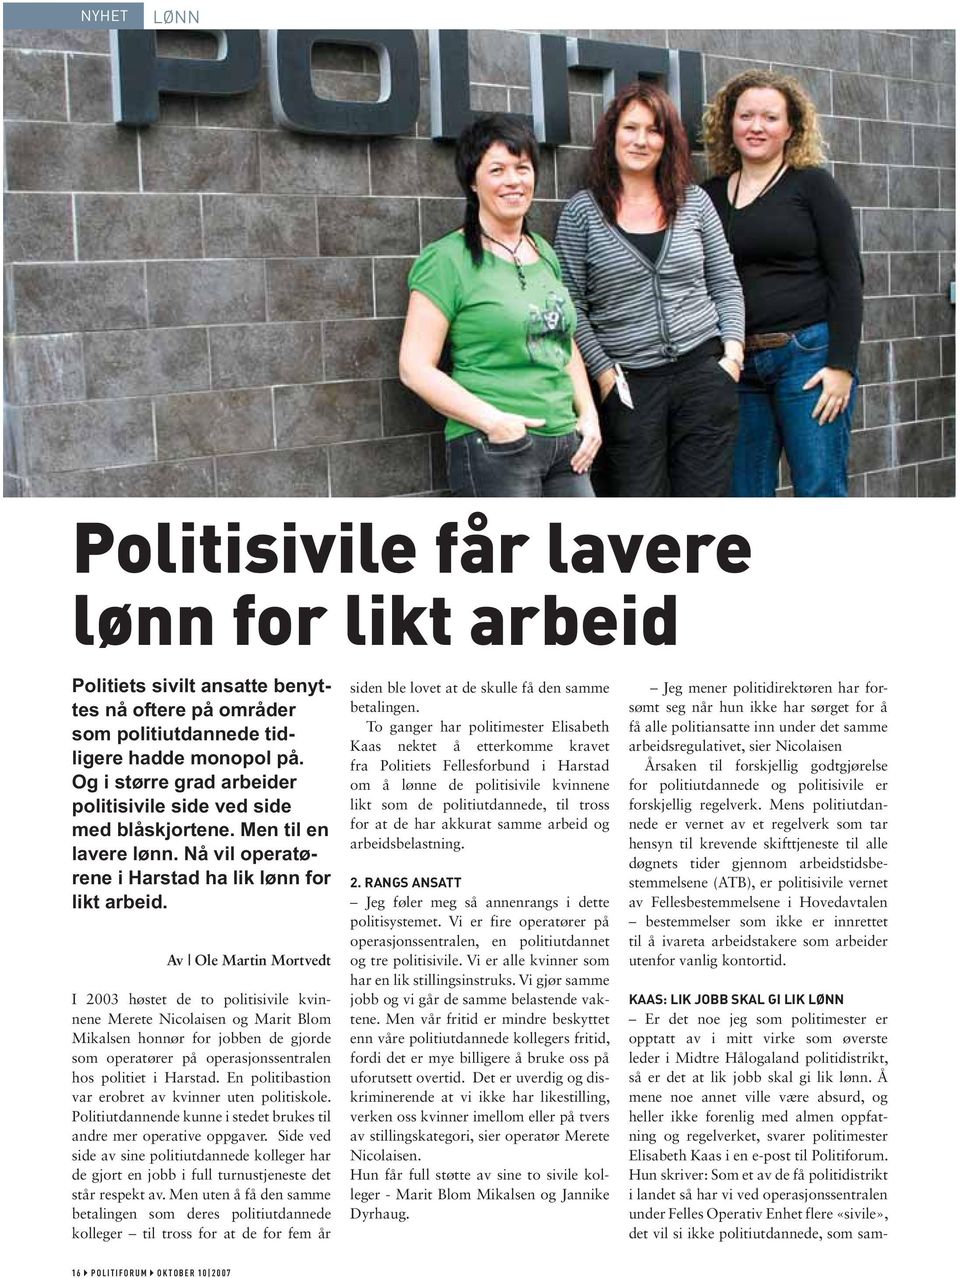 Av Ole Martin Mortvedt I 2003 høstet de to politisivile kvinnene Merete Nicolaisen og Marit Blom Mikalsen honnør for jobben de gjorde som operatører på operasjonssentralen hos politiet i Harstad.